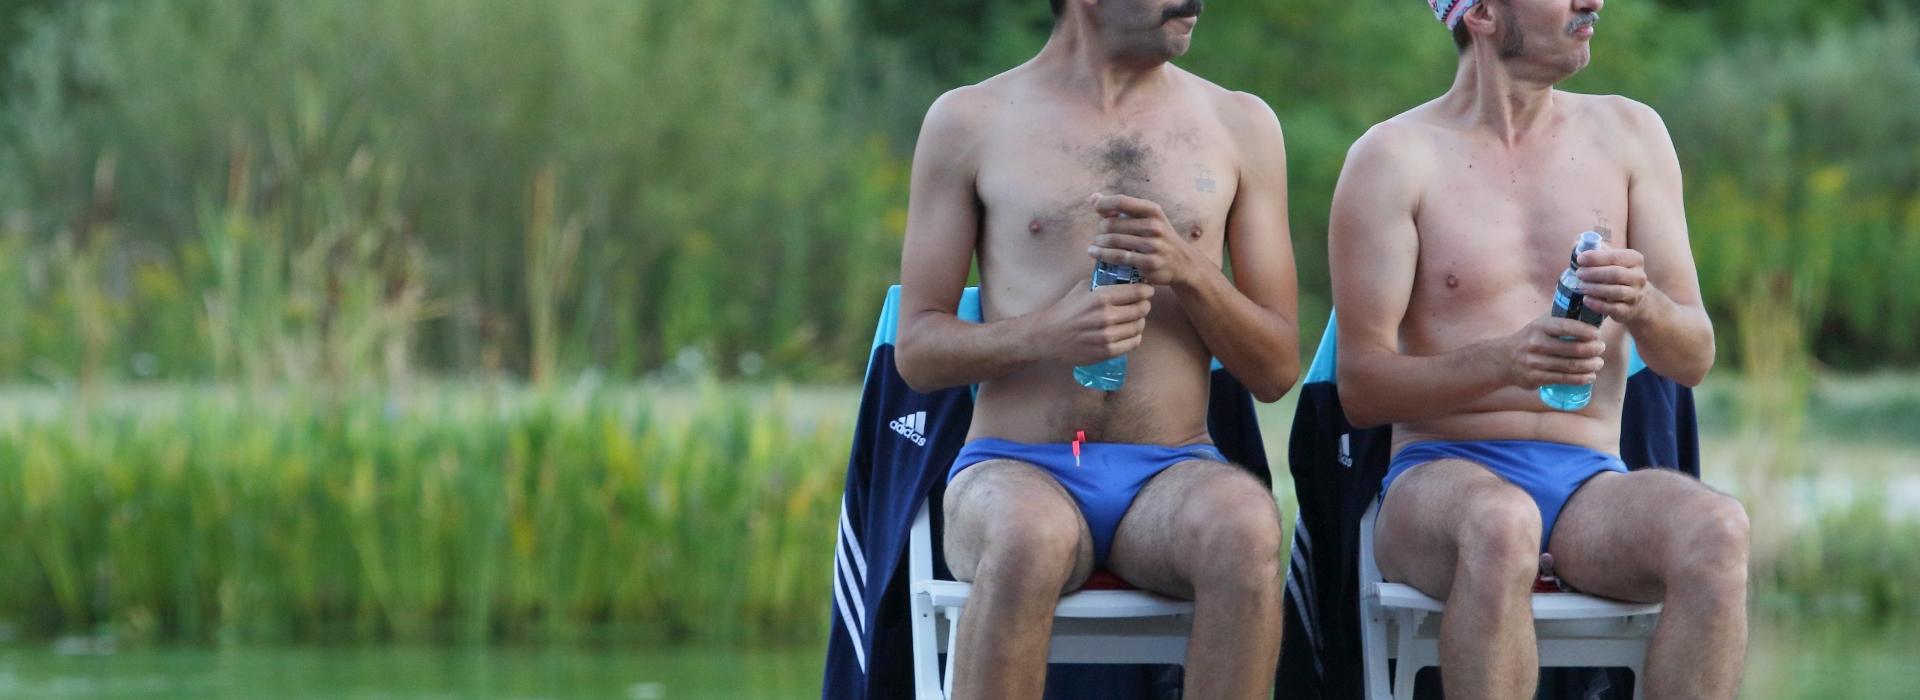 deux hommes en slip et bonnet de bain assis près d'une piscine gonflable regardent vers la gauche